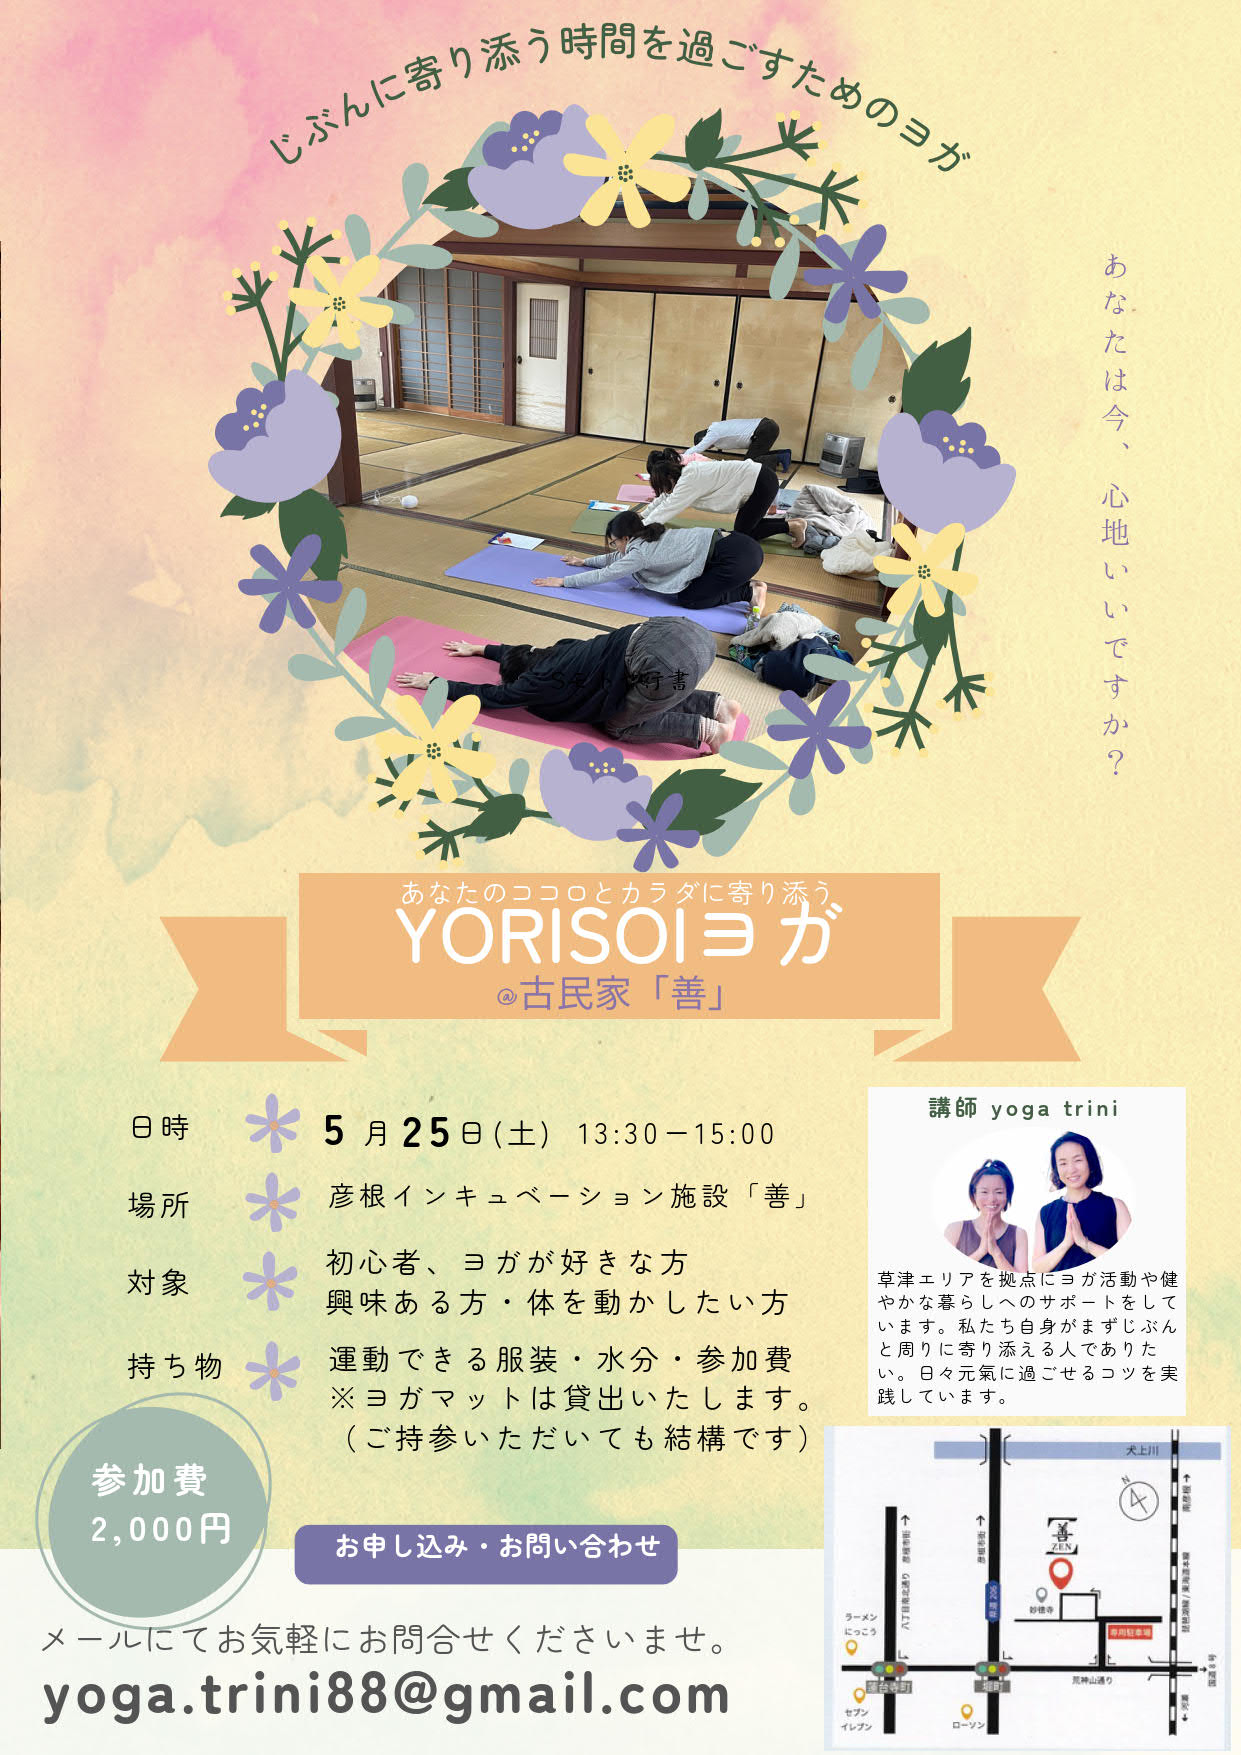 「「YORISOIヨガ」イベントのお知らせ」へリンク